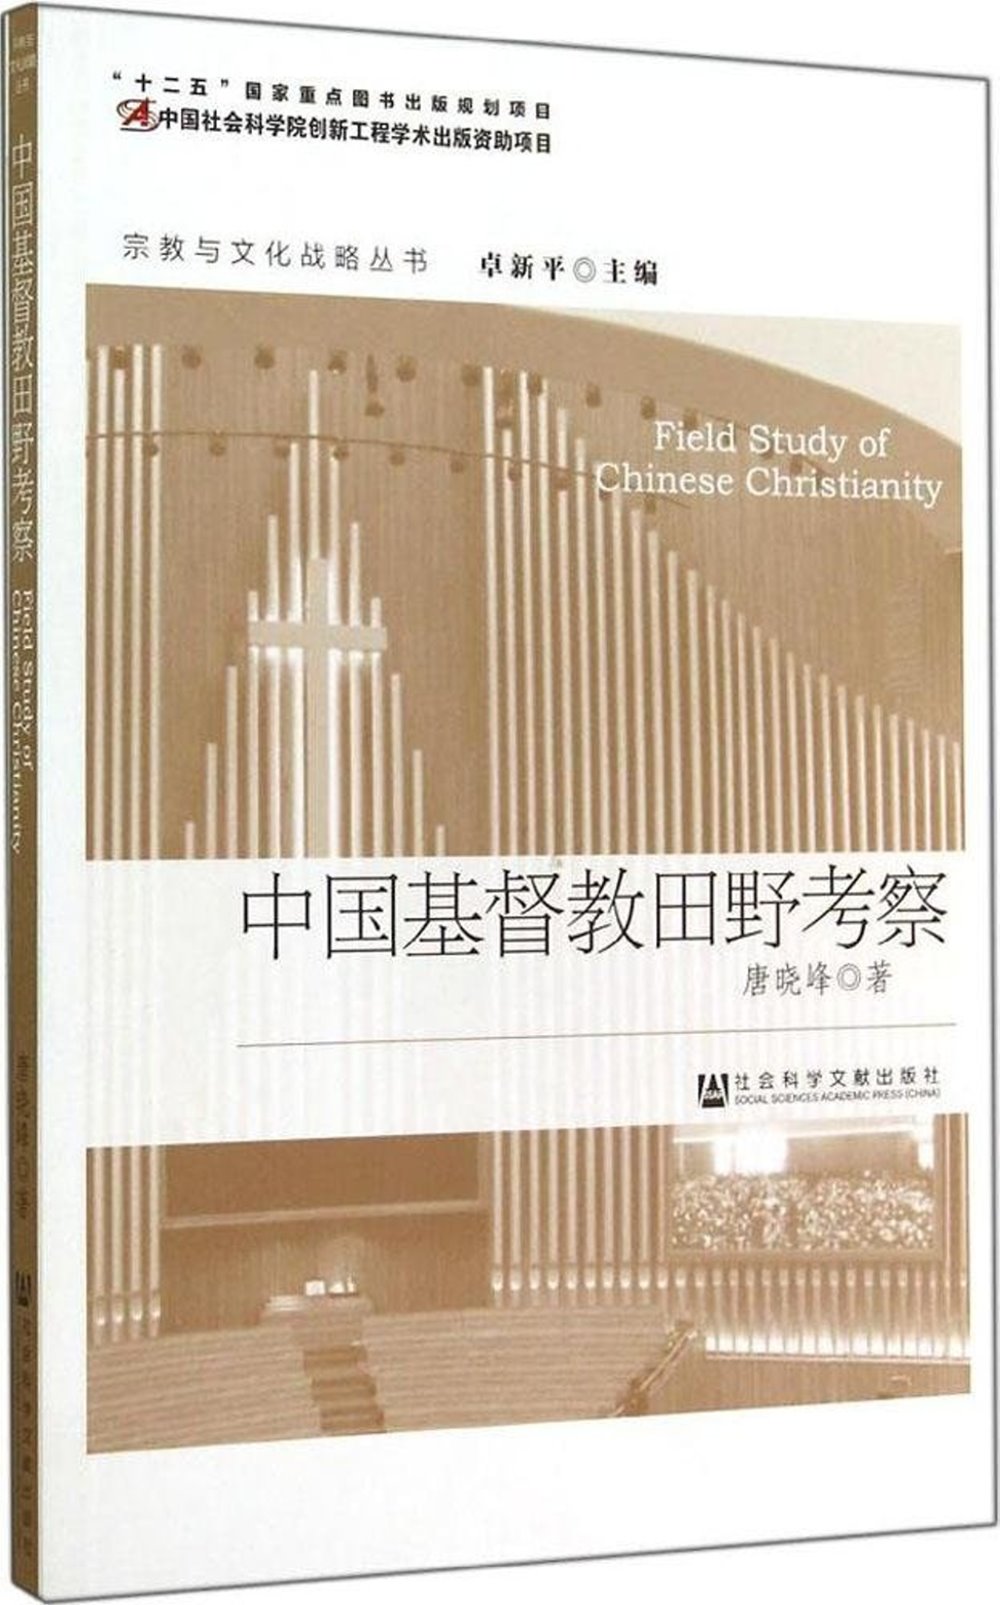 中國基督教田野考察